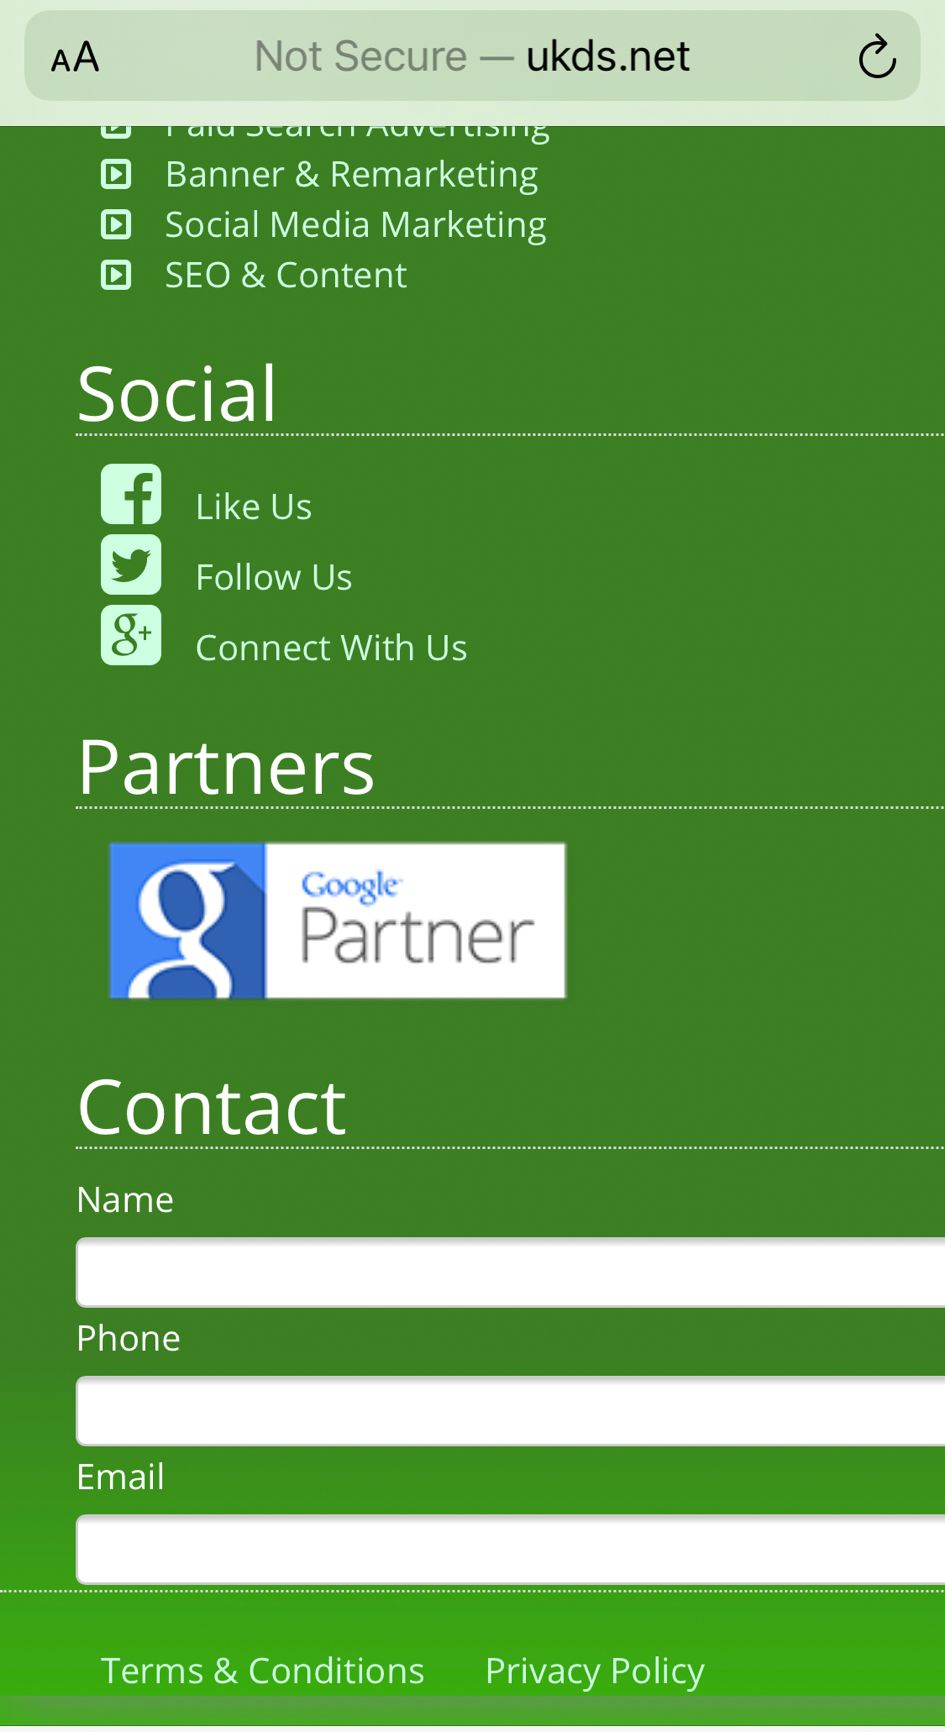 UKDS.net Google Partner